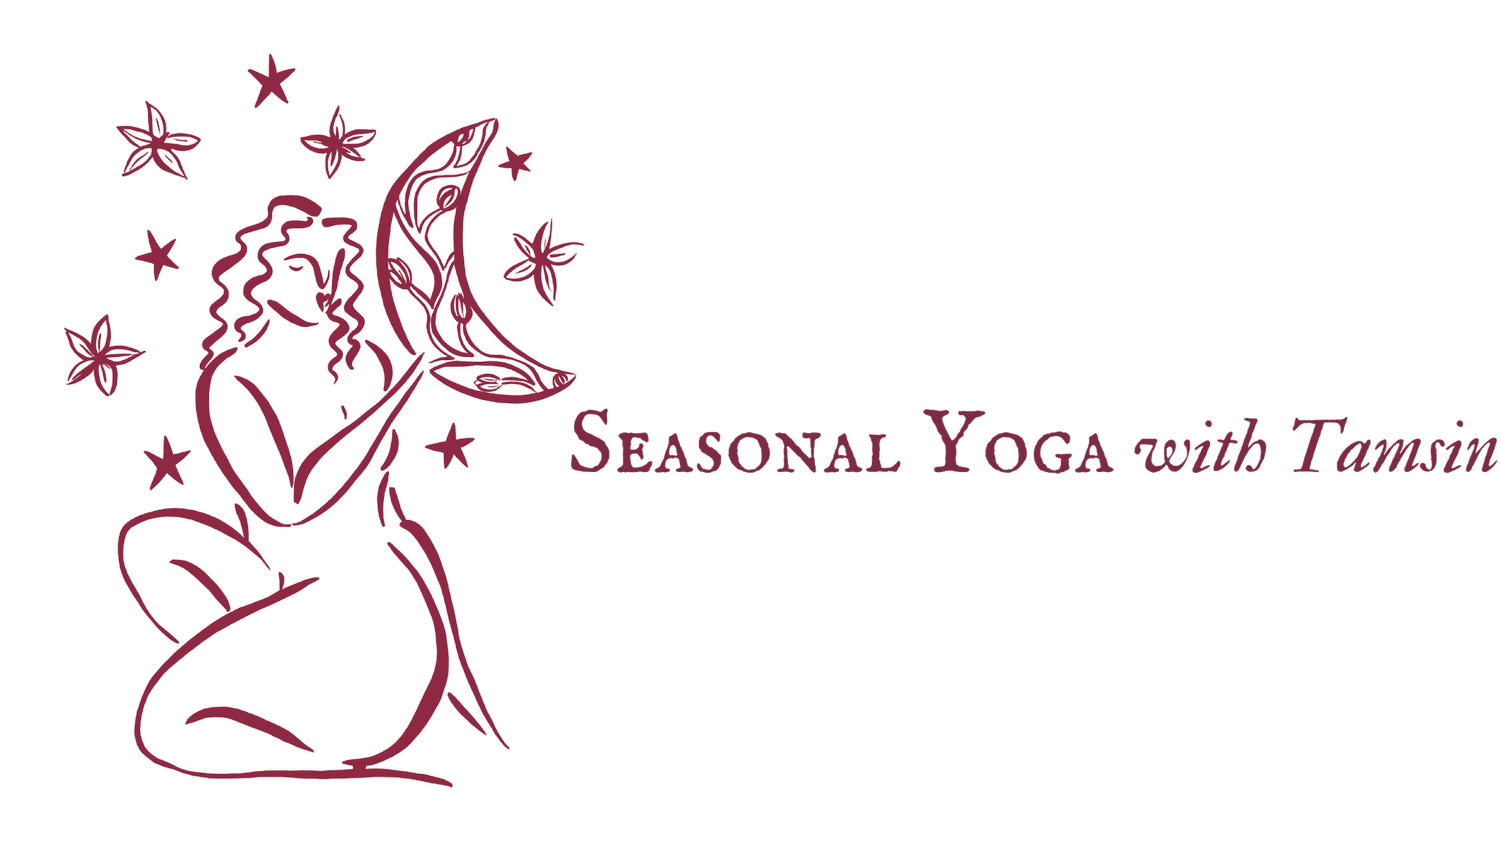 Seasonal Yoga with Tamsin